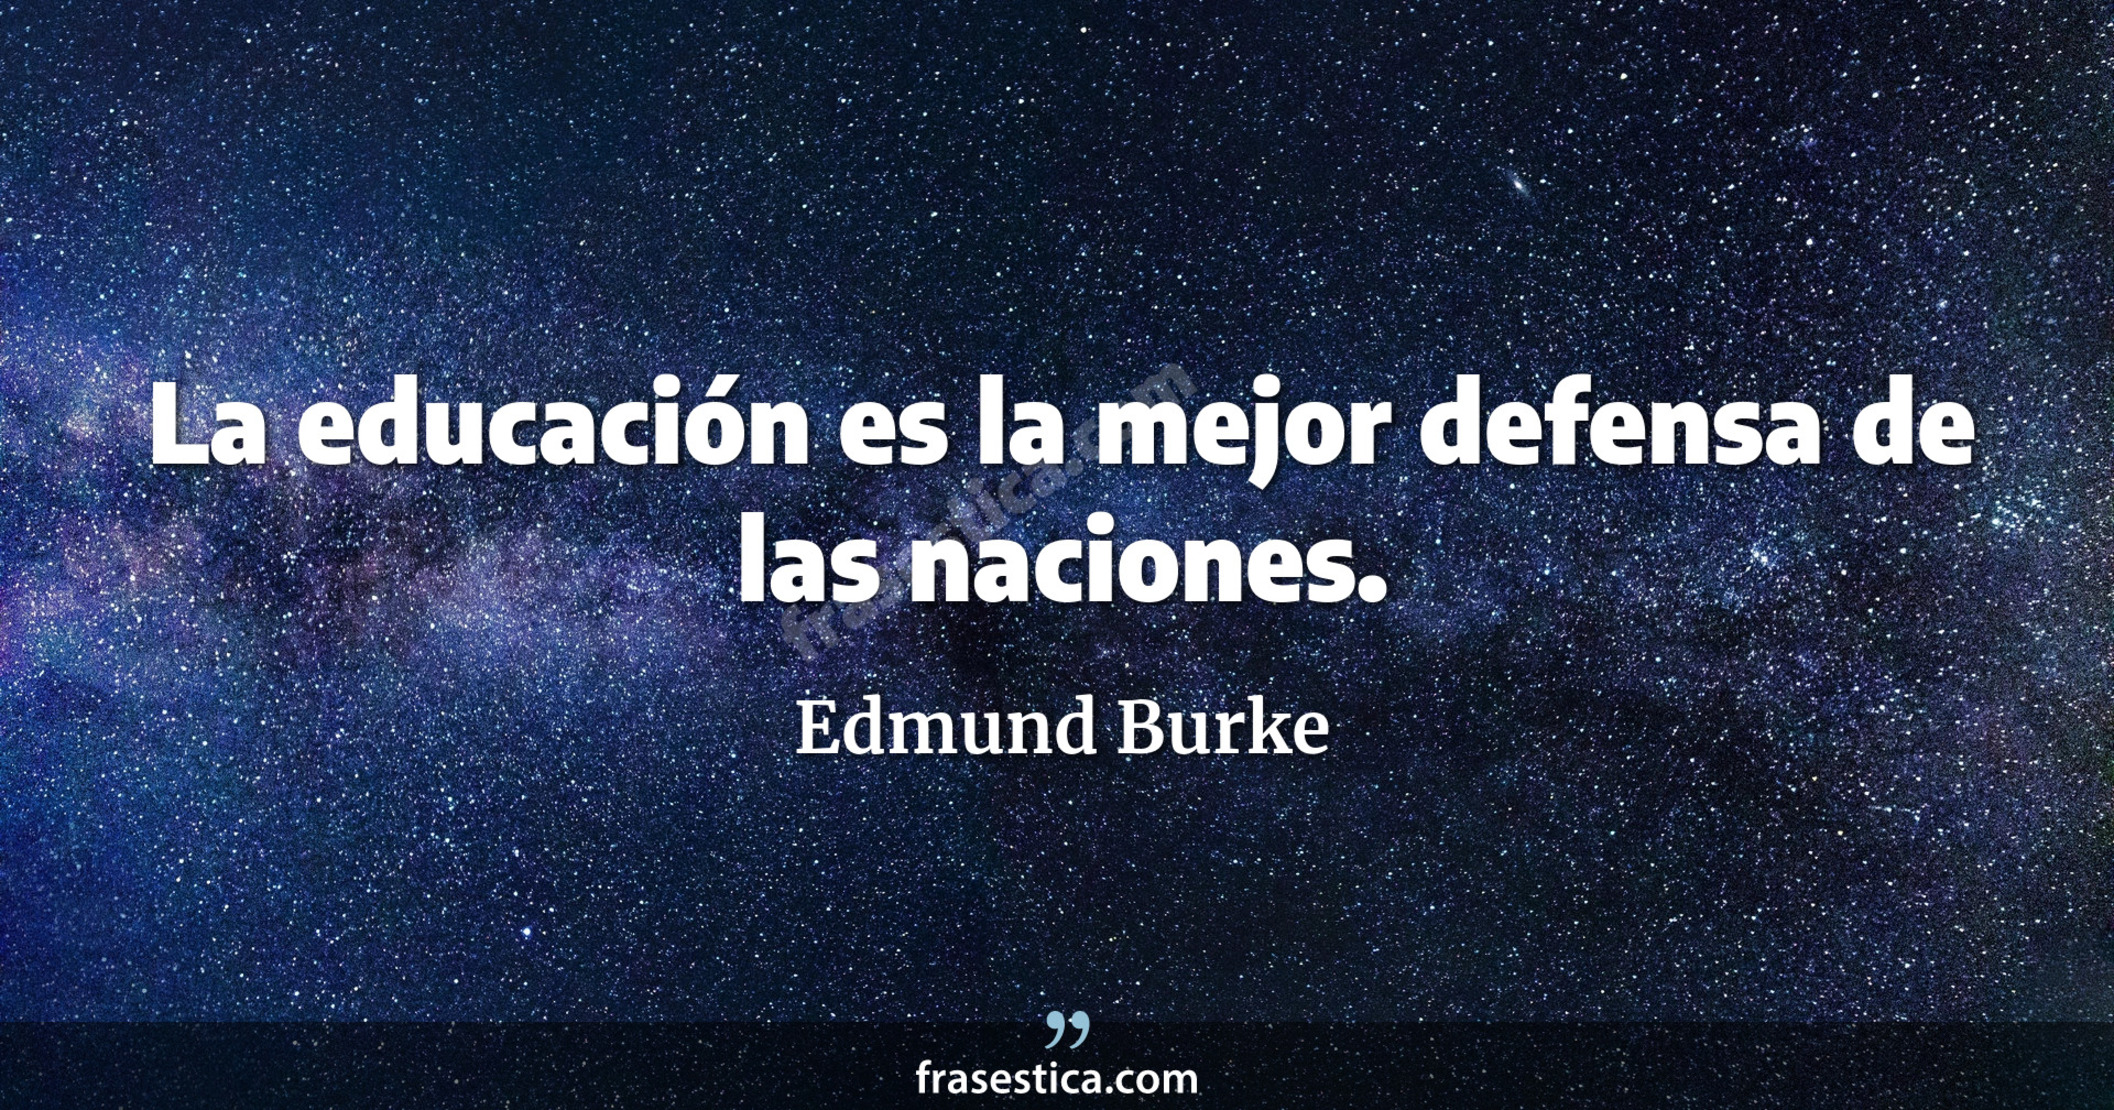 La educación es la mejor defensa de las naciones. - Edmund Burke